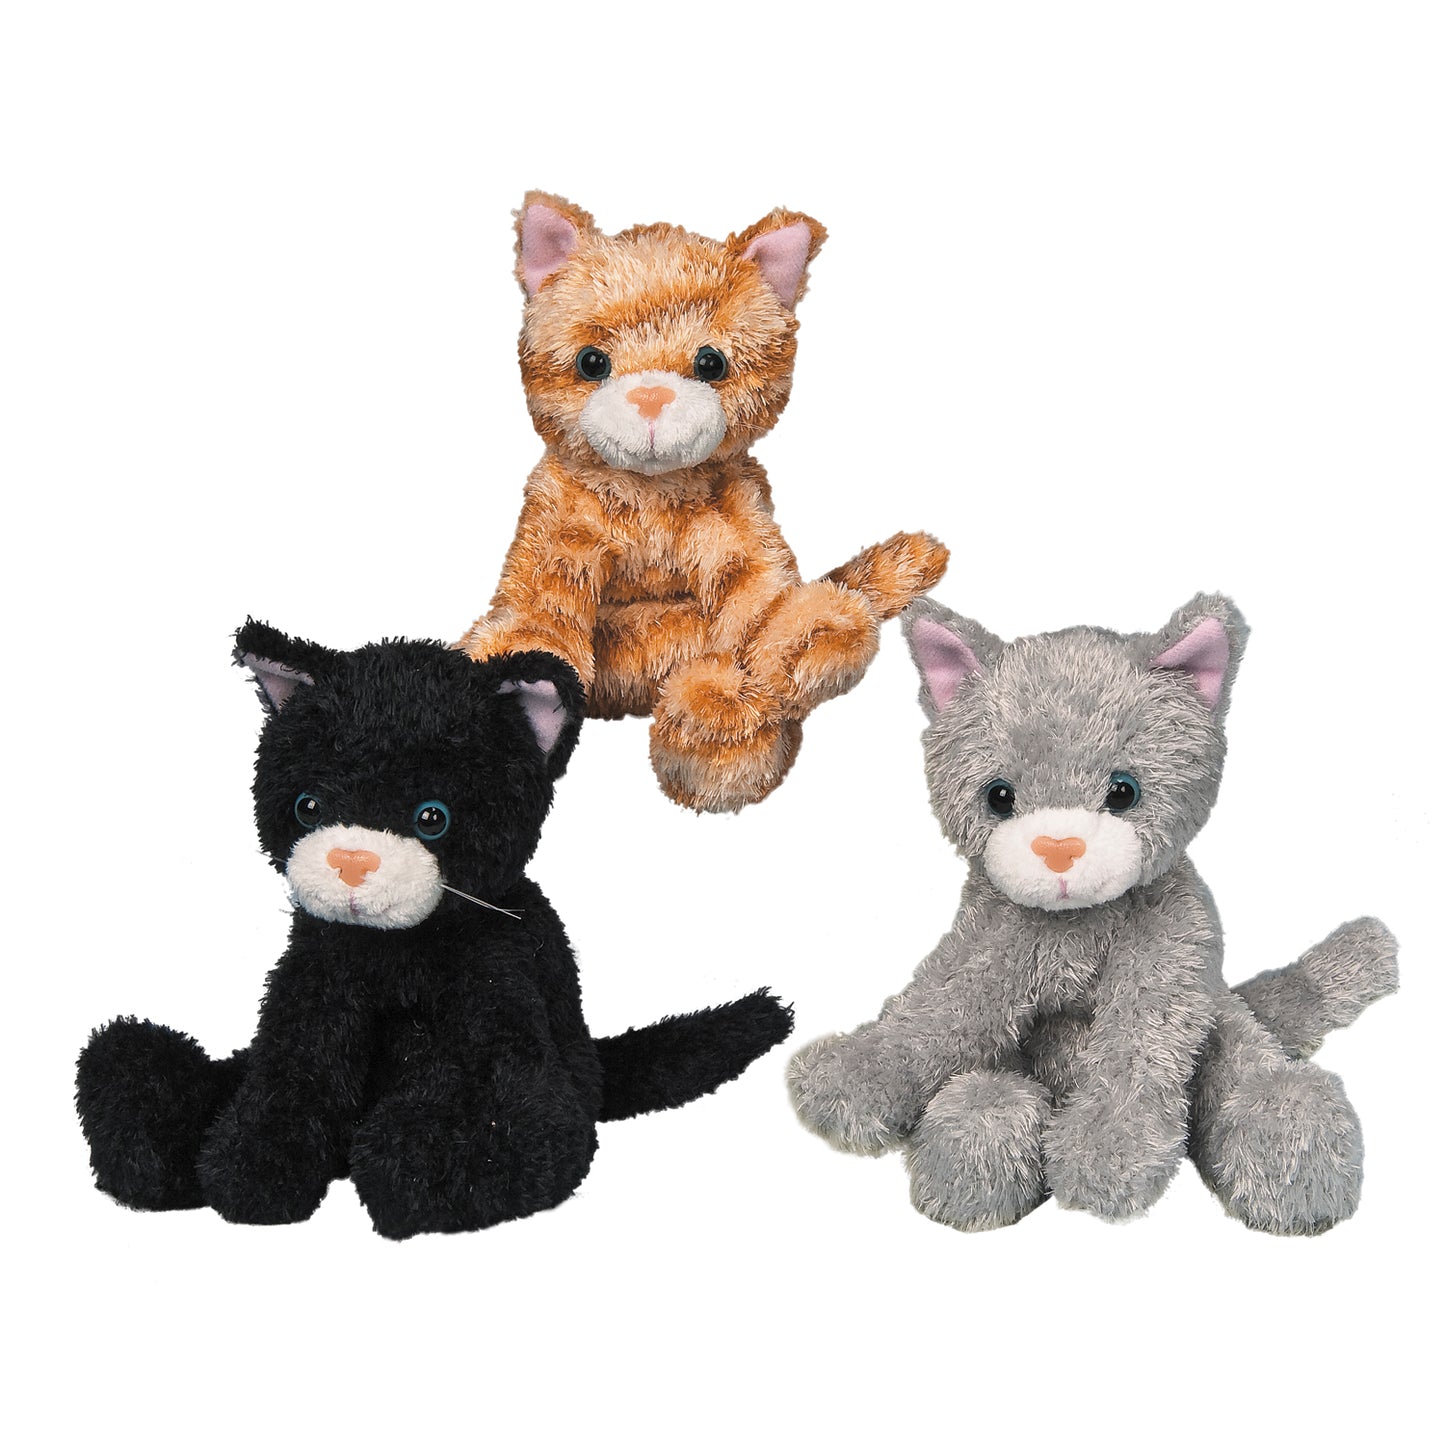 Mini Kitten Stuffed Animal - 6"